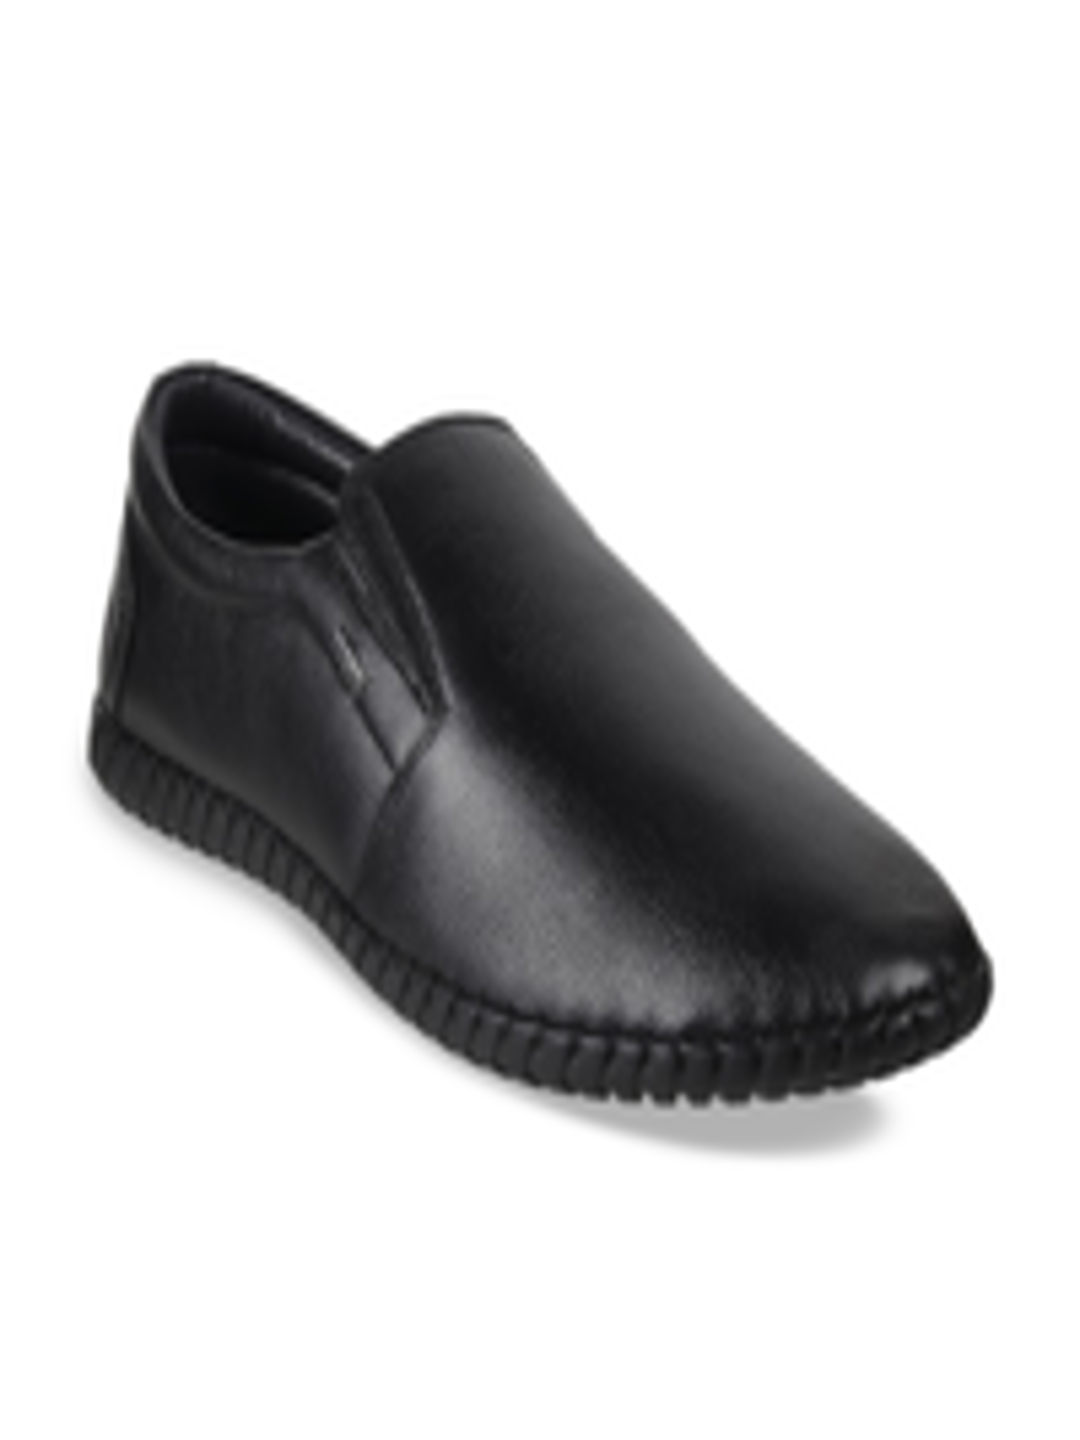 Buy Mochi Men Black Leather Slip On Shoes - Formal Shoes for Men ...